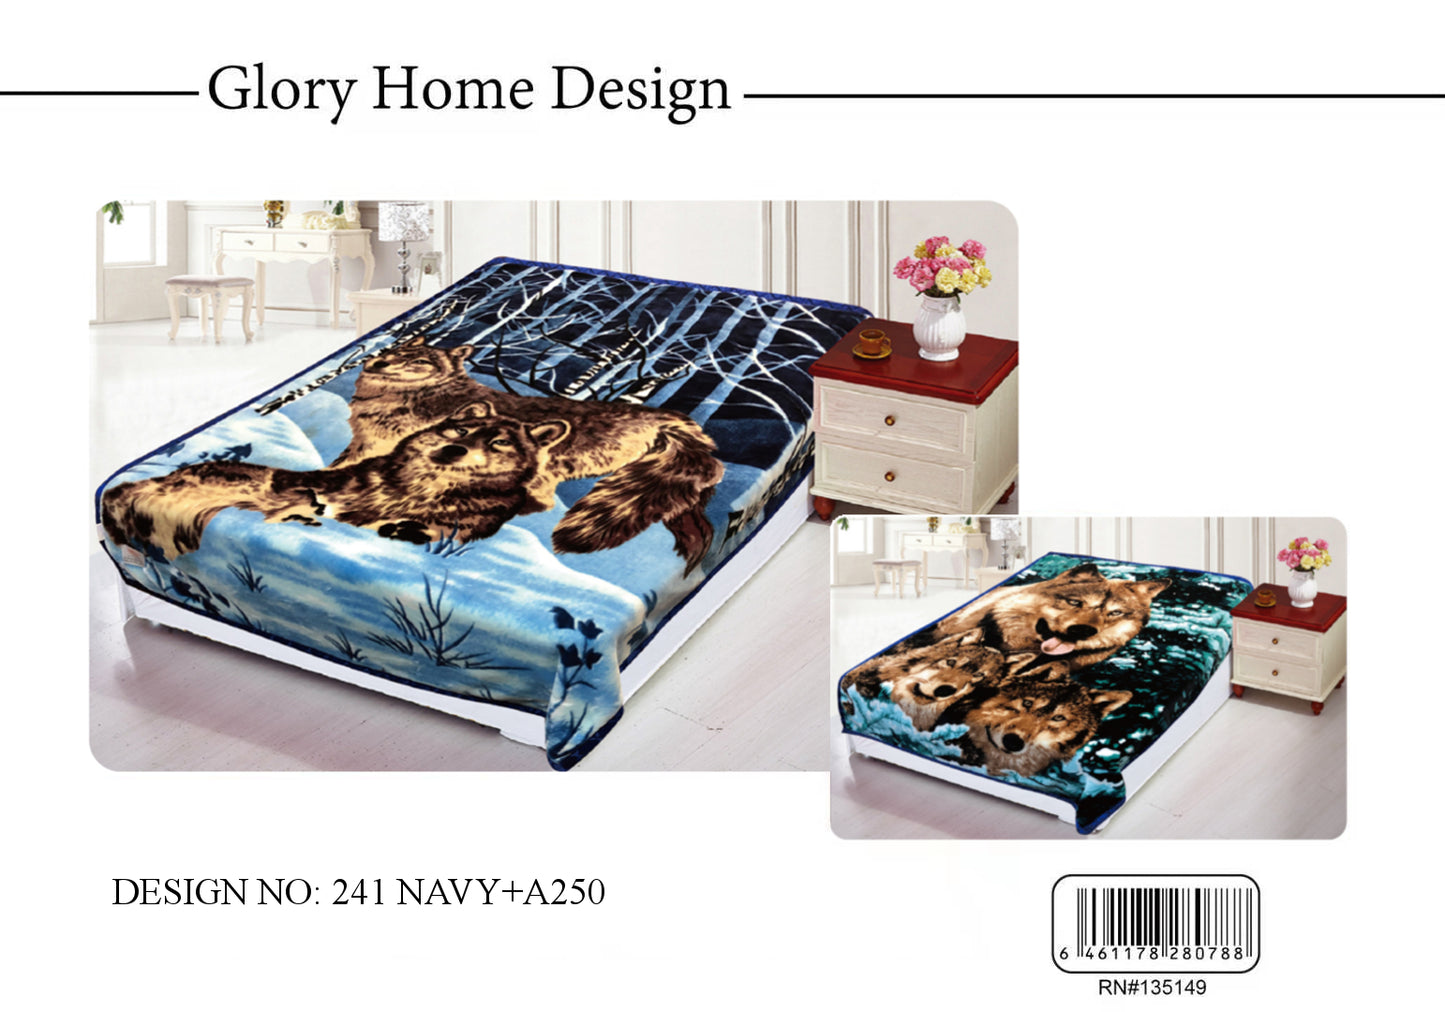 5 KG Queen Blanket - Glory Home Design